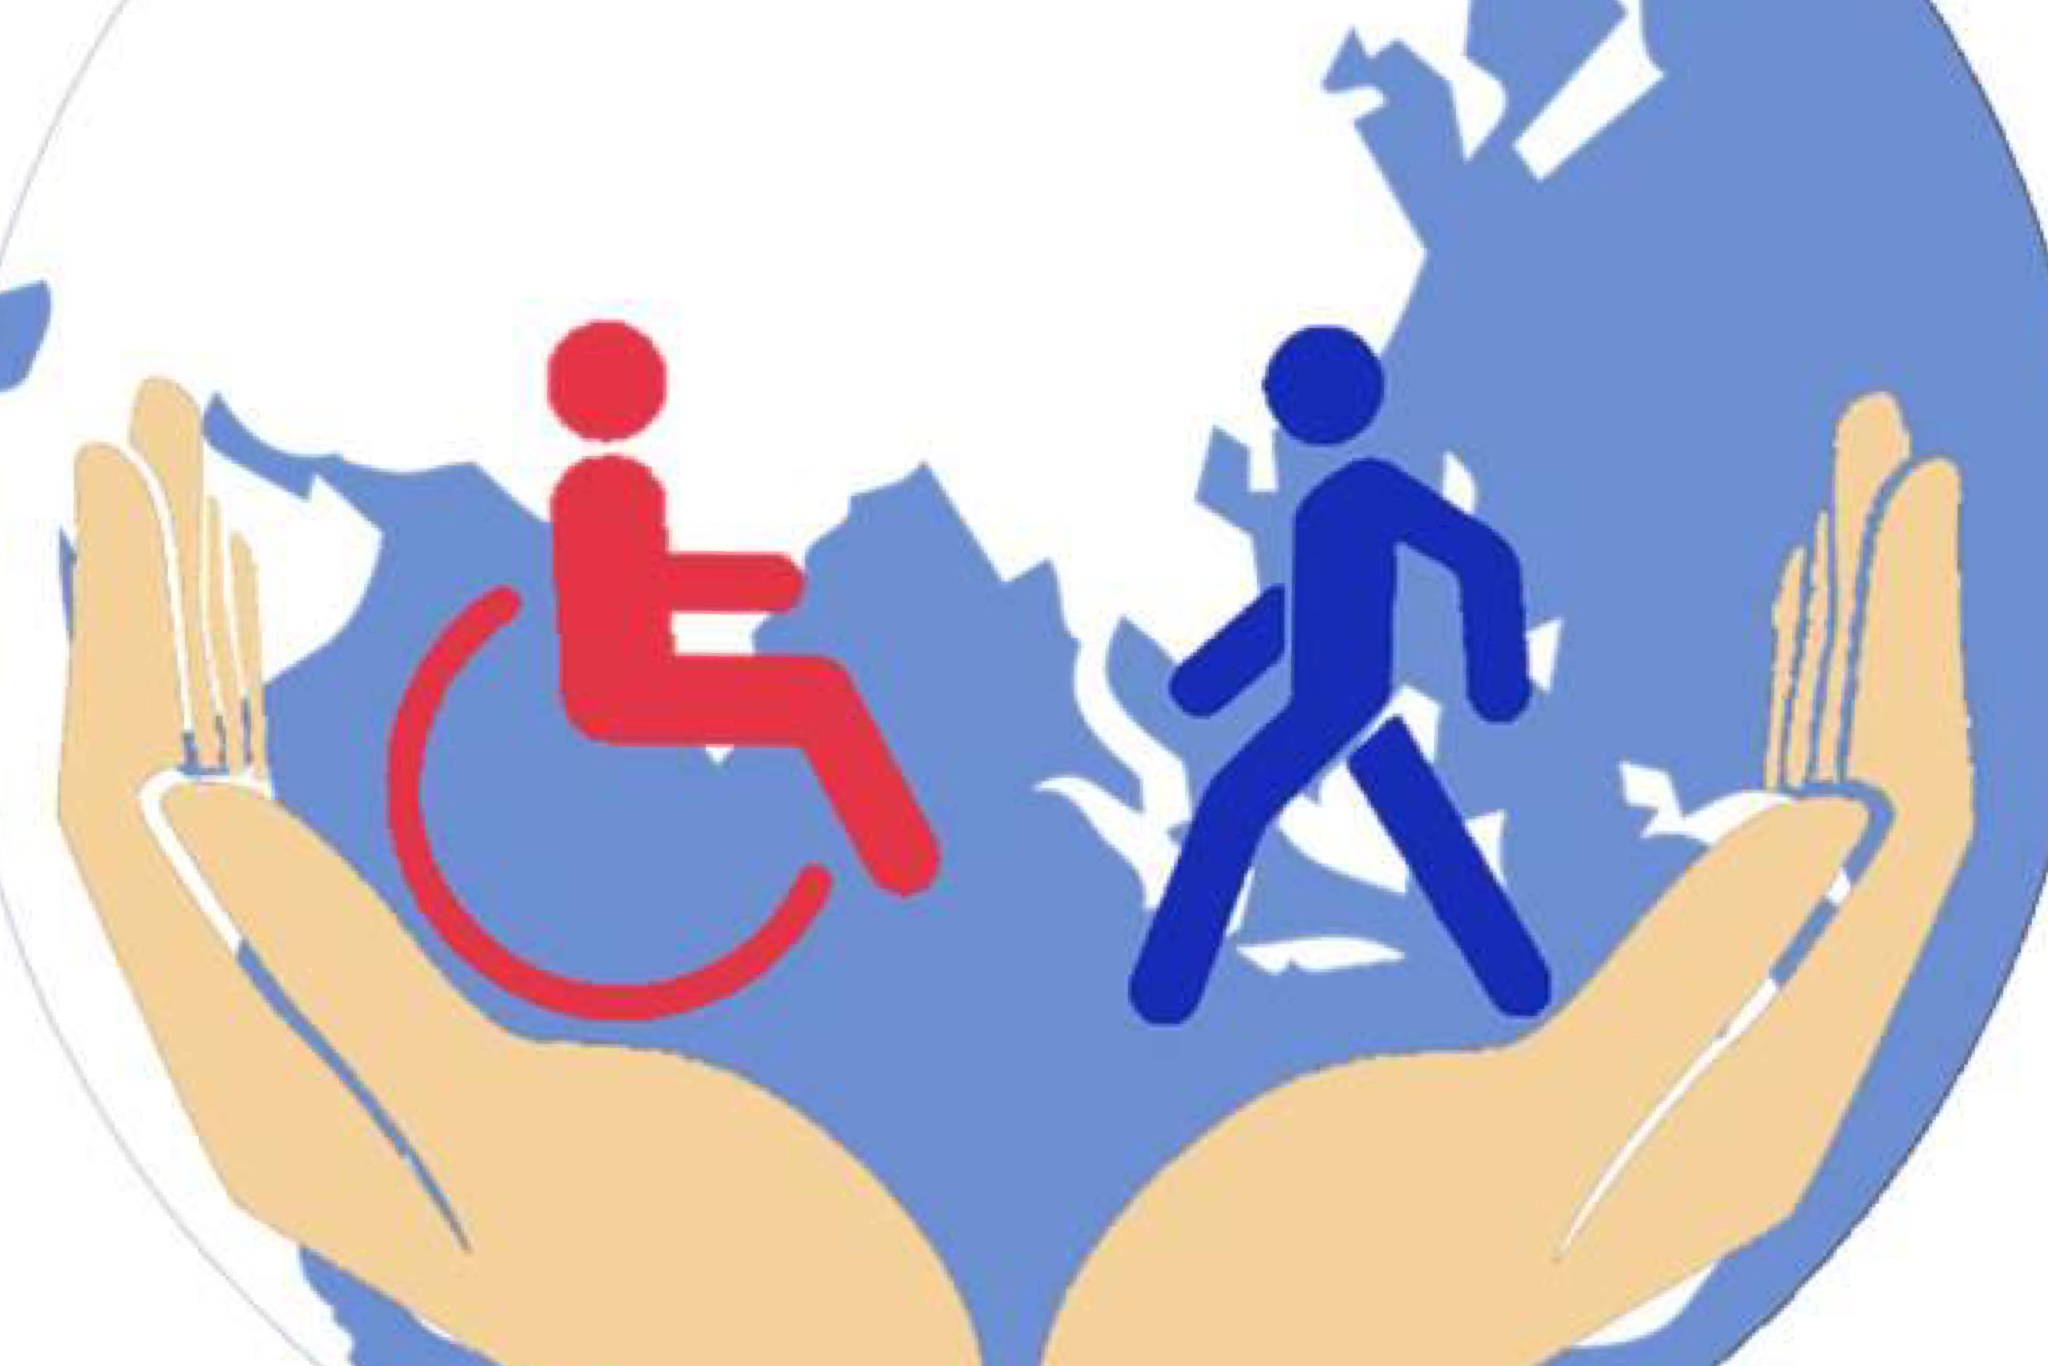 Доступность интеграция. Защита инвалидов. Соц защита инвалидов. Инвалиды в социуме. Социальная защита людей с ограниченными возможностями.